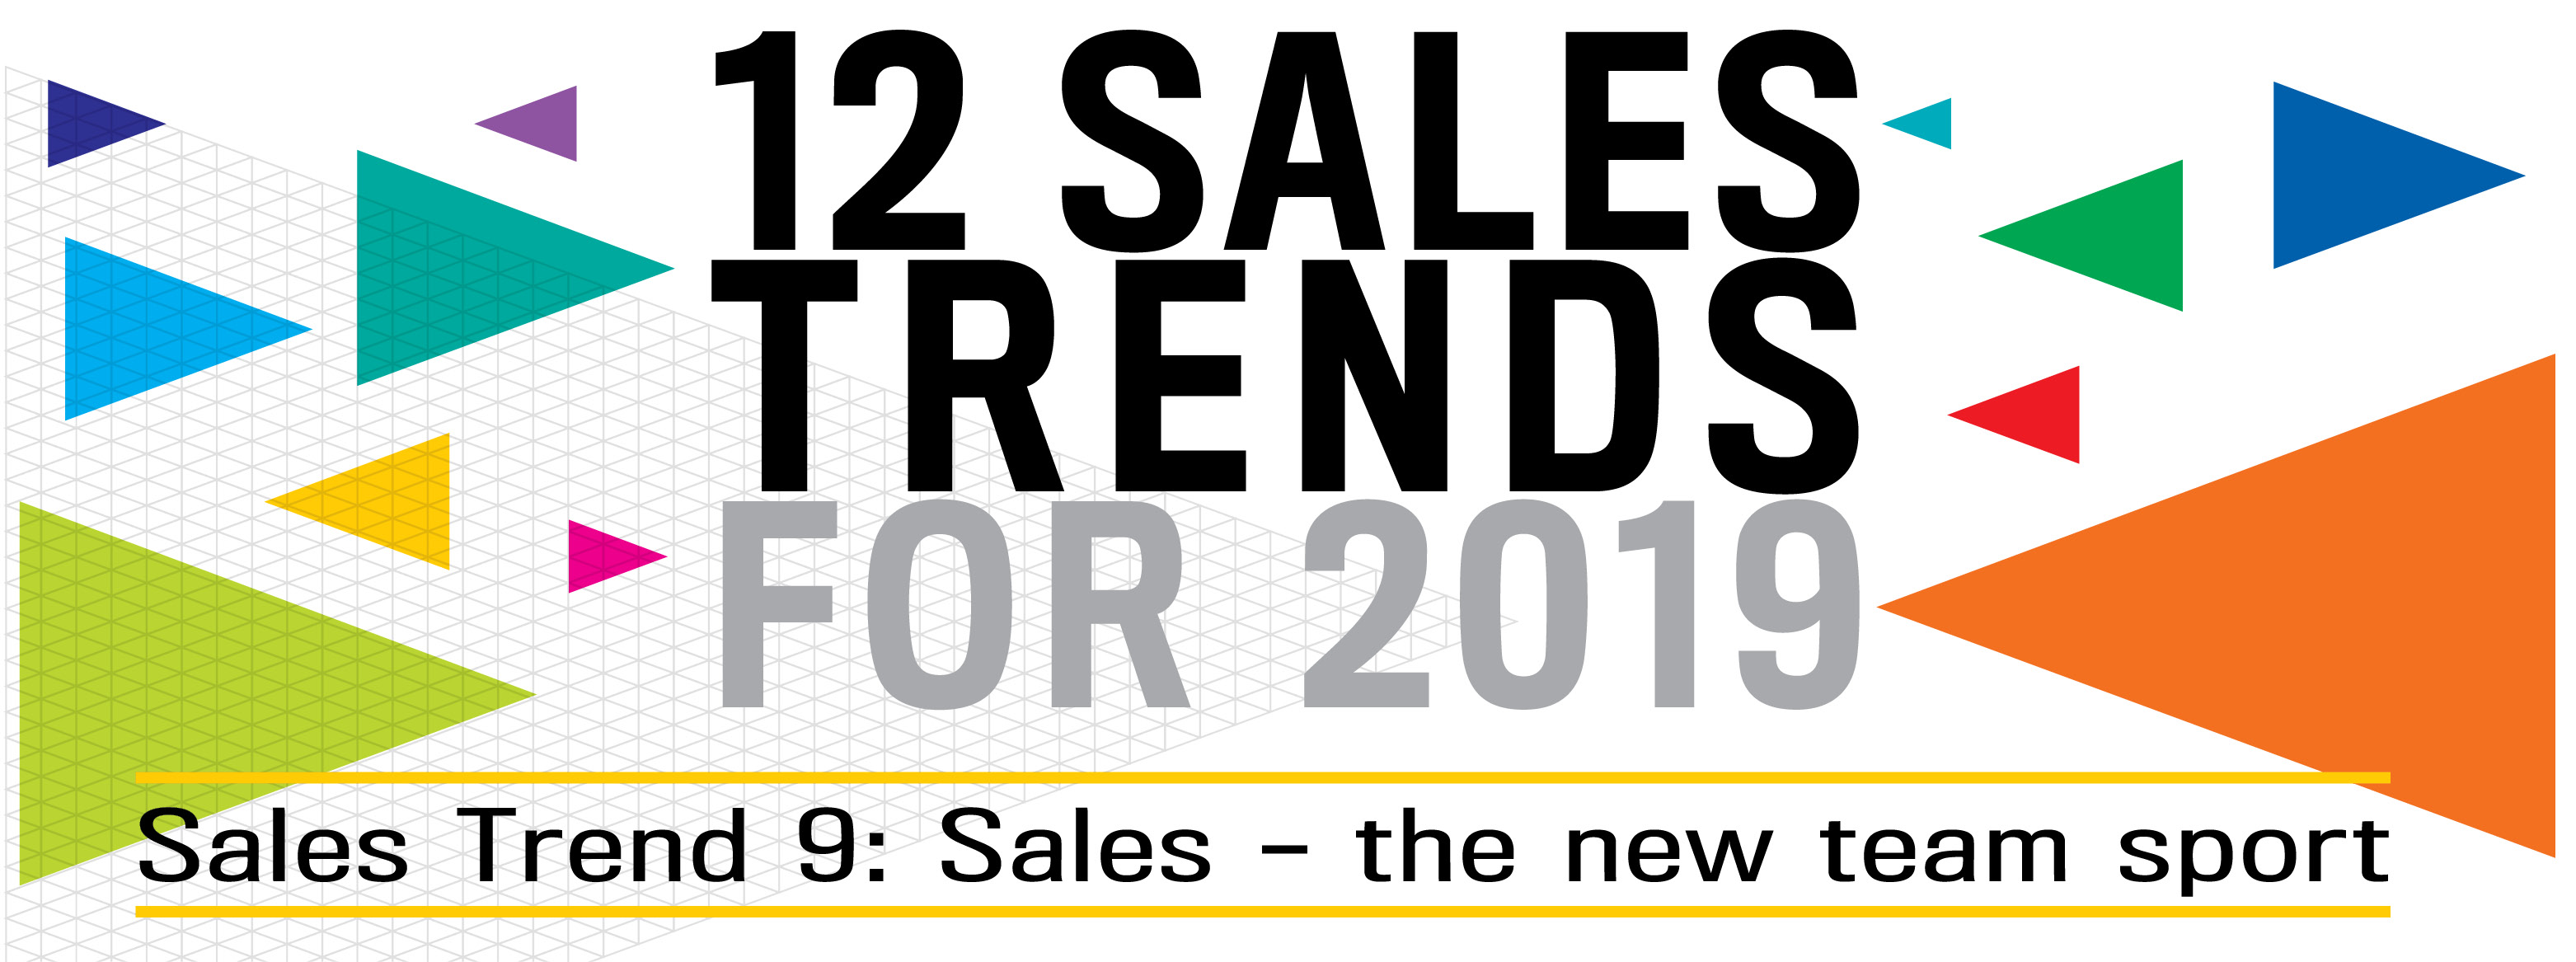 barrett_sales_trends_2019_Trend_9_Sales-the-new-team-sport